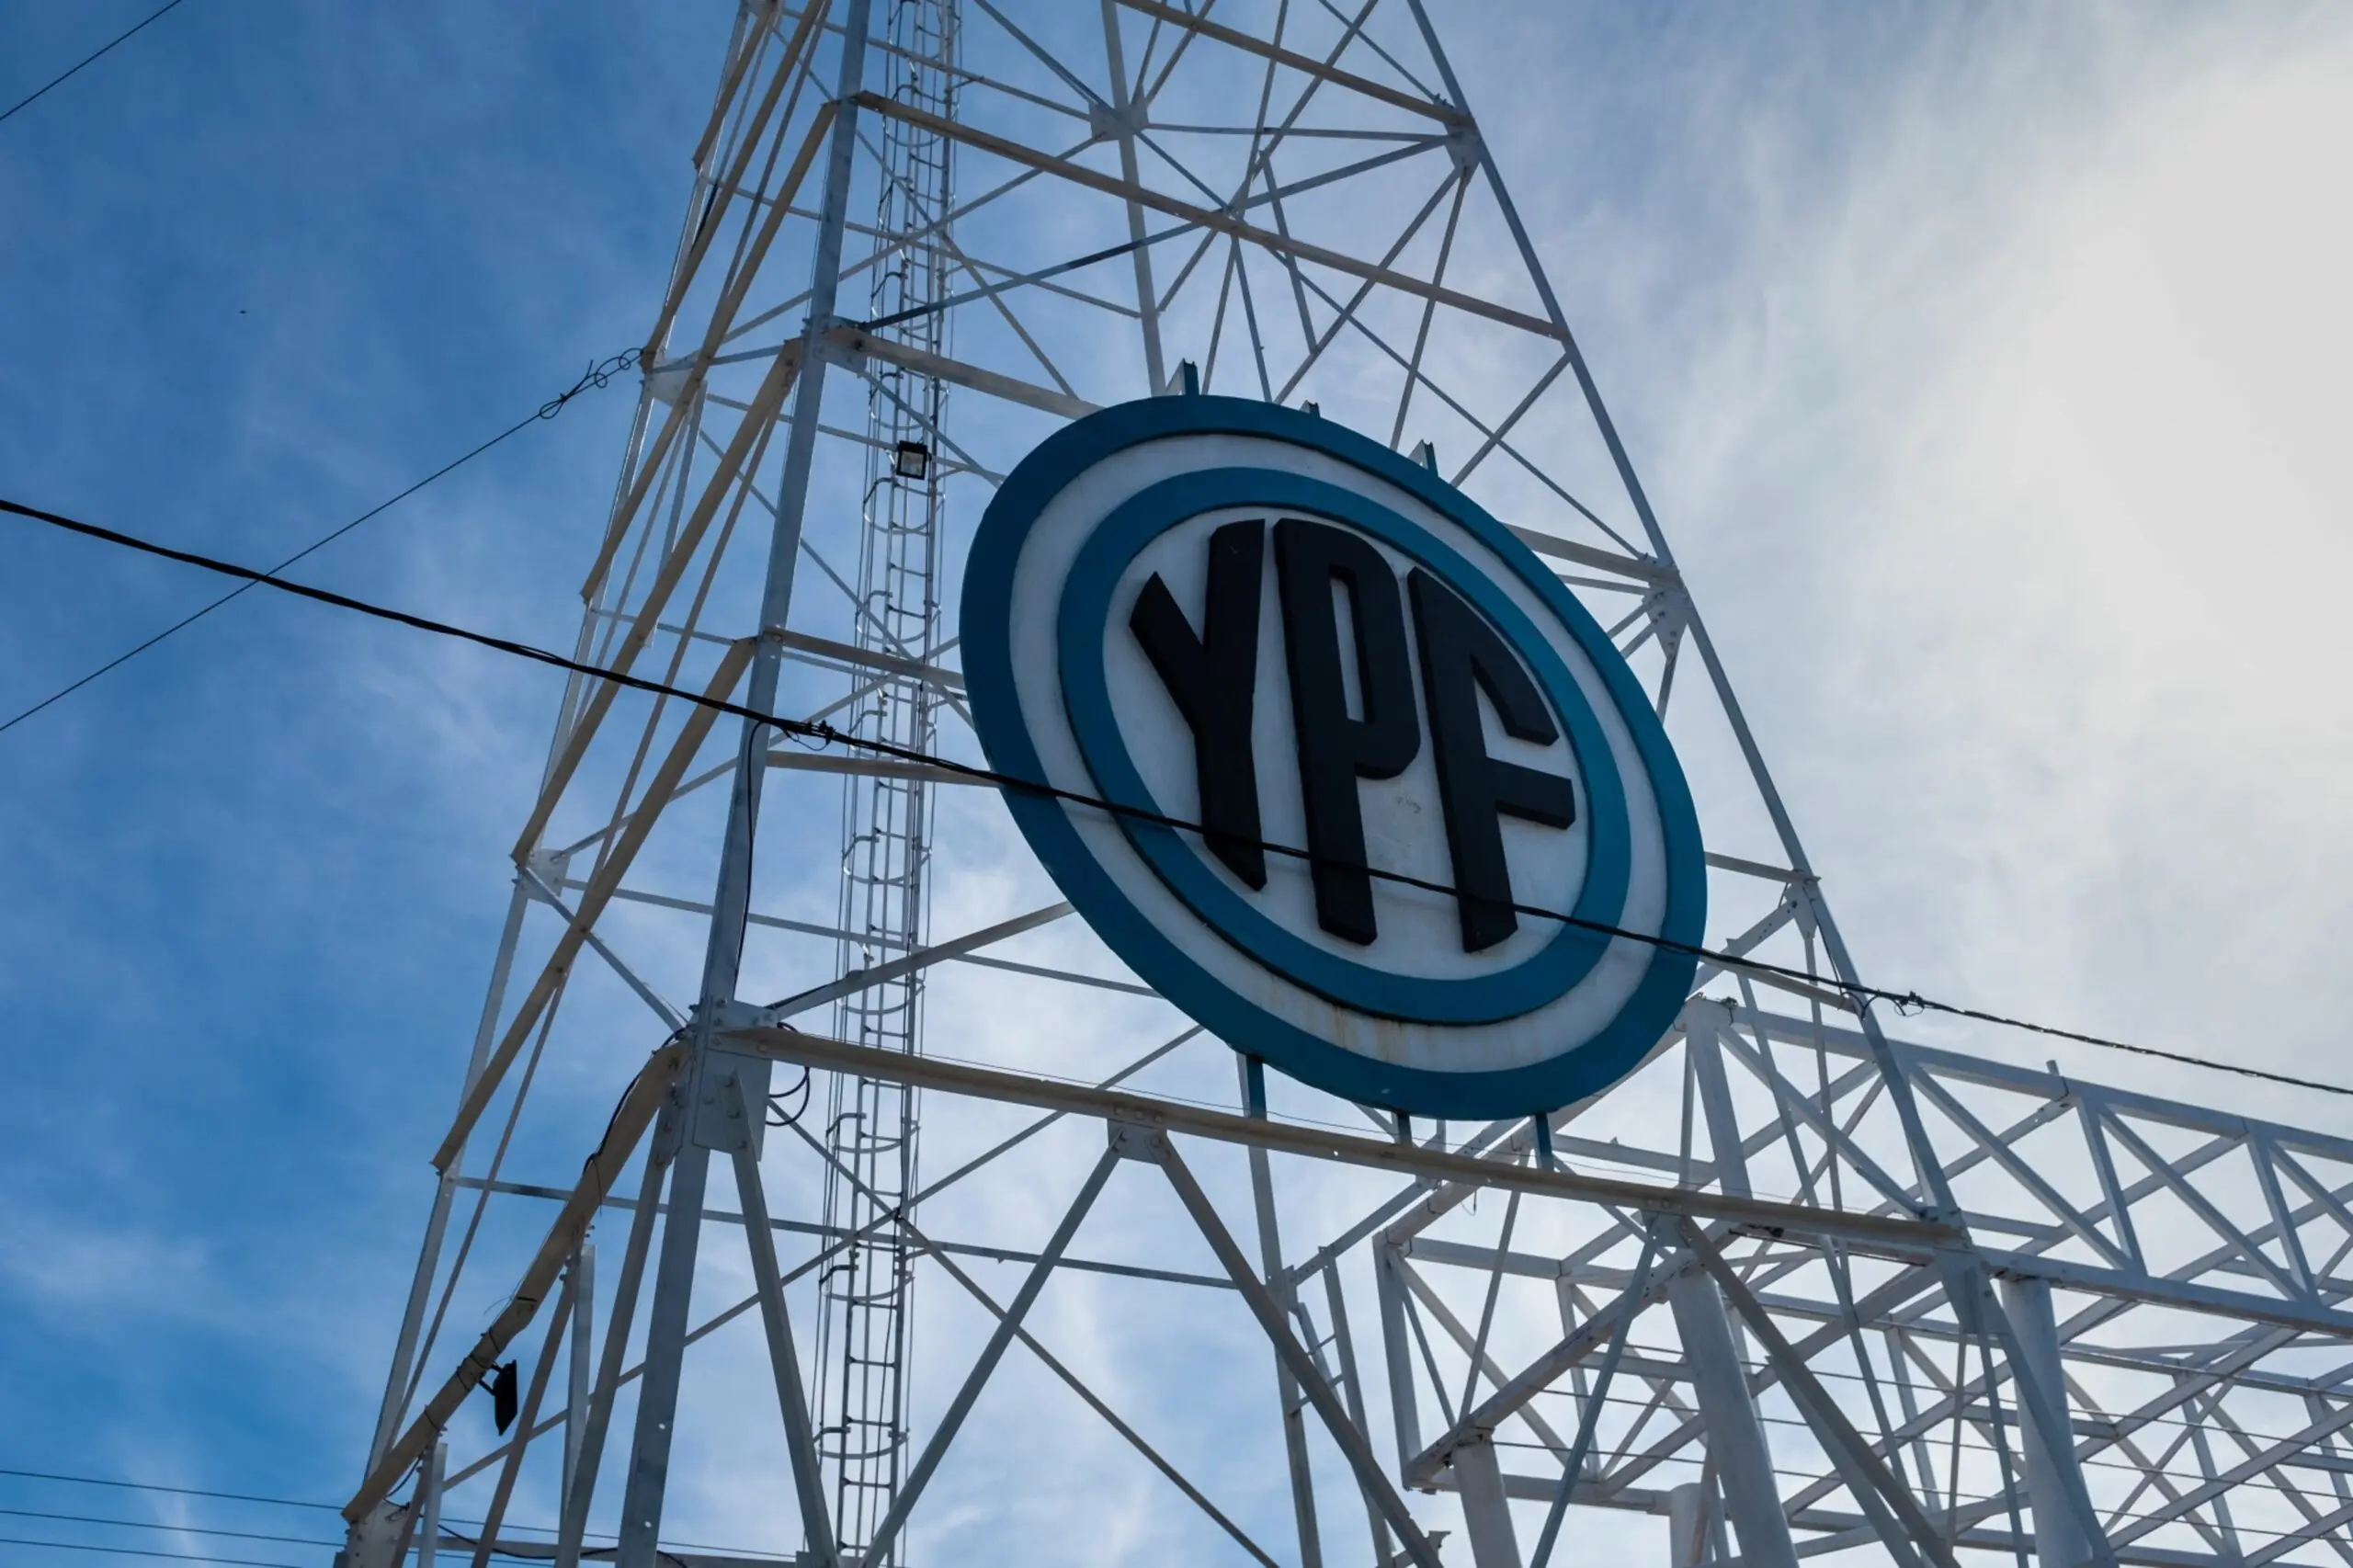 auditoria ypf - Cómo es la situación actual de YPF